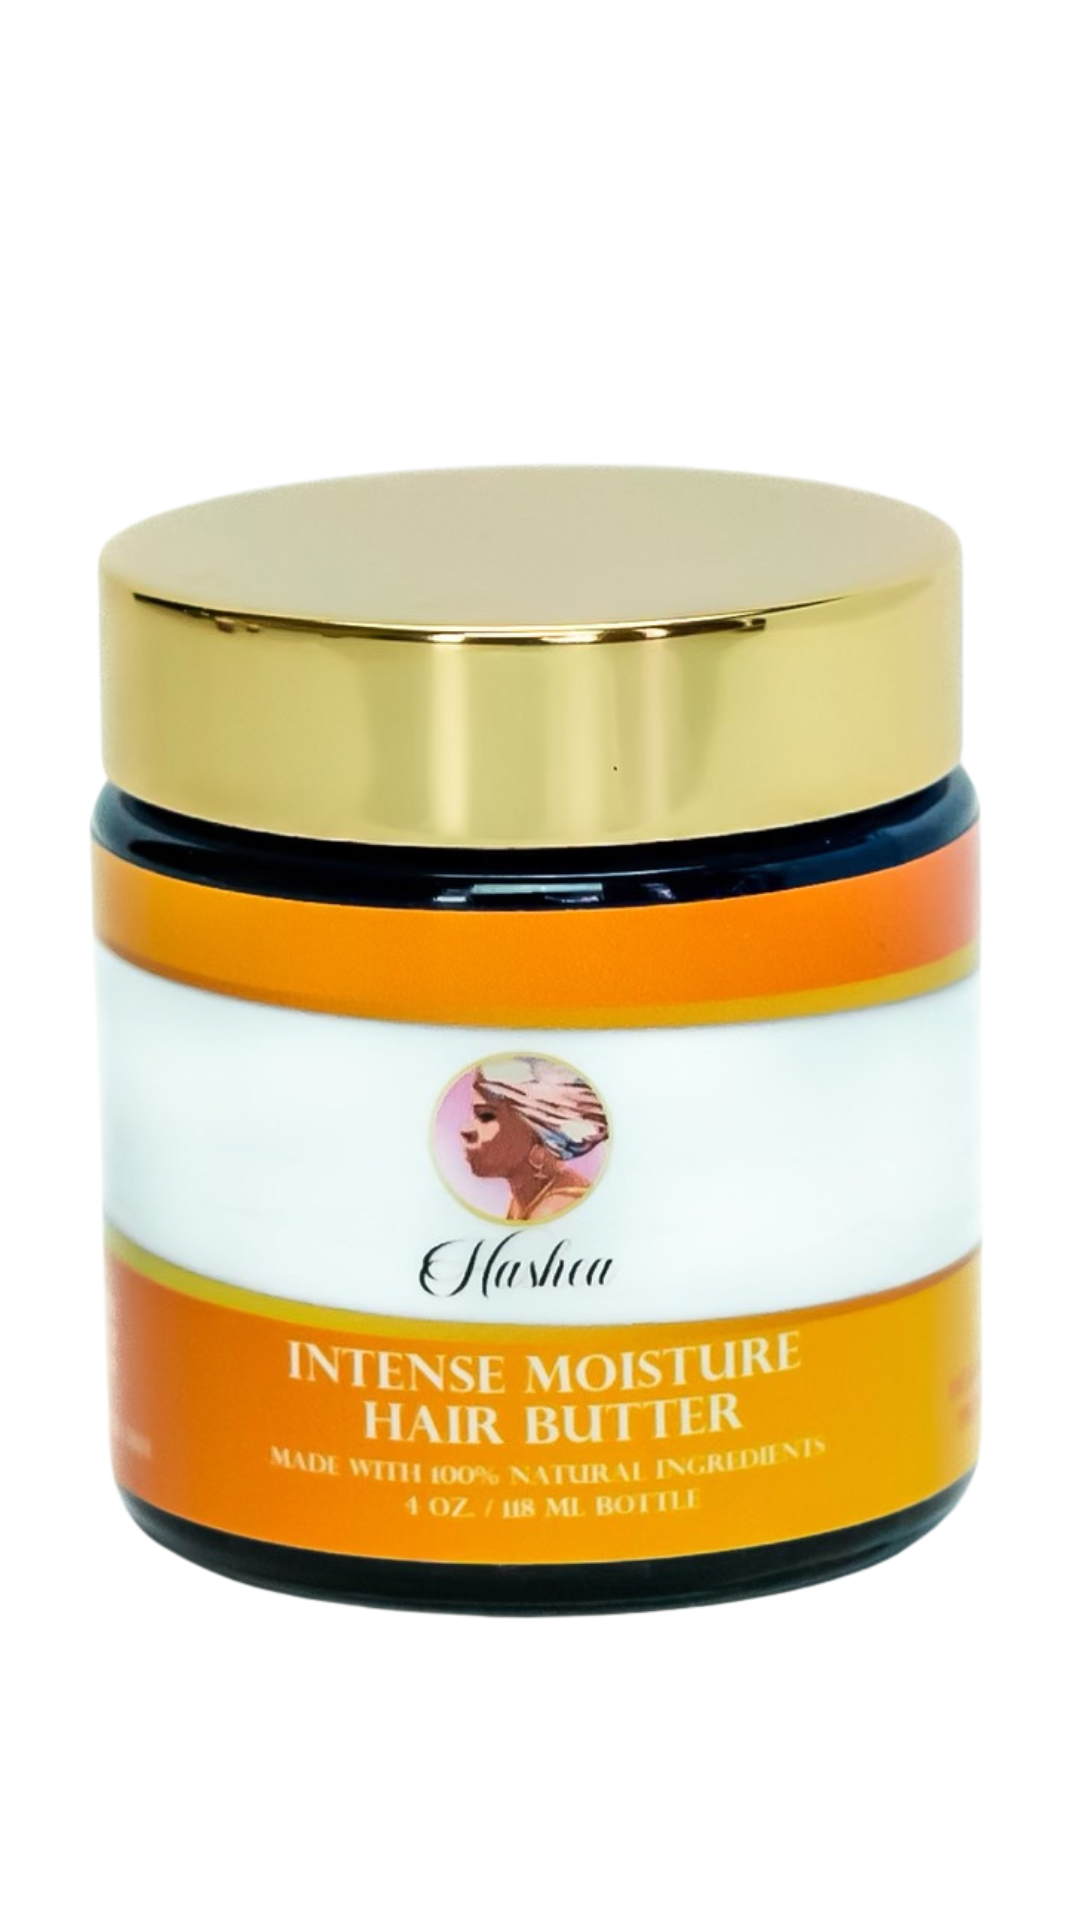 Hashea Intense Moisture Hair Butter